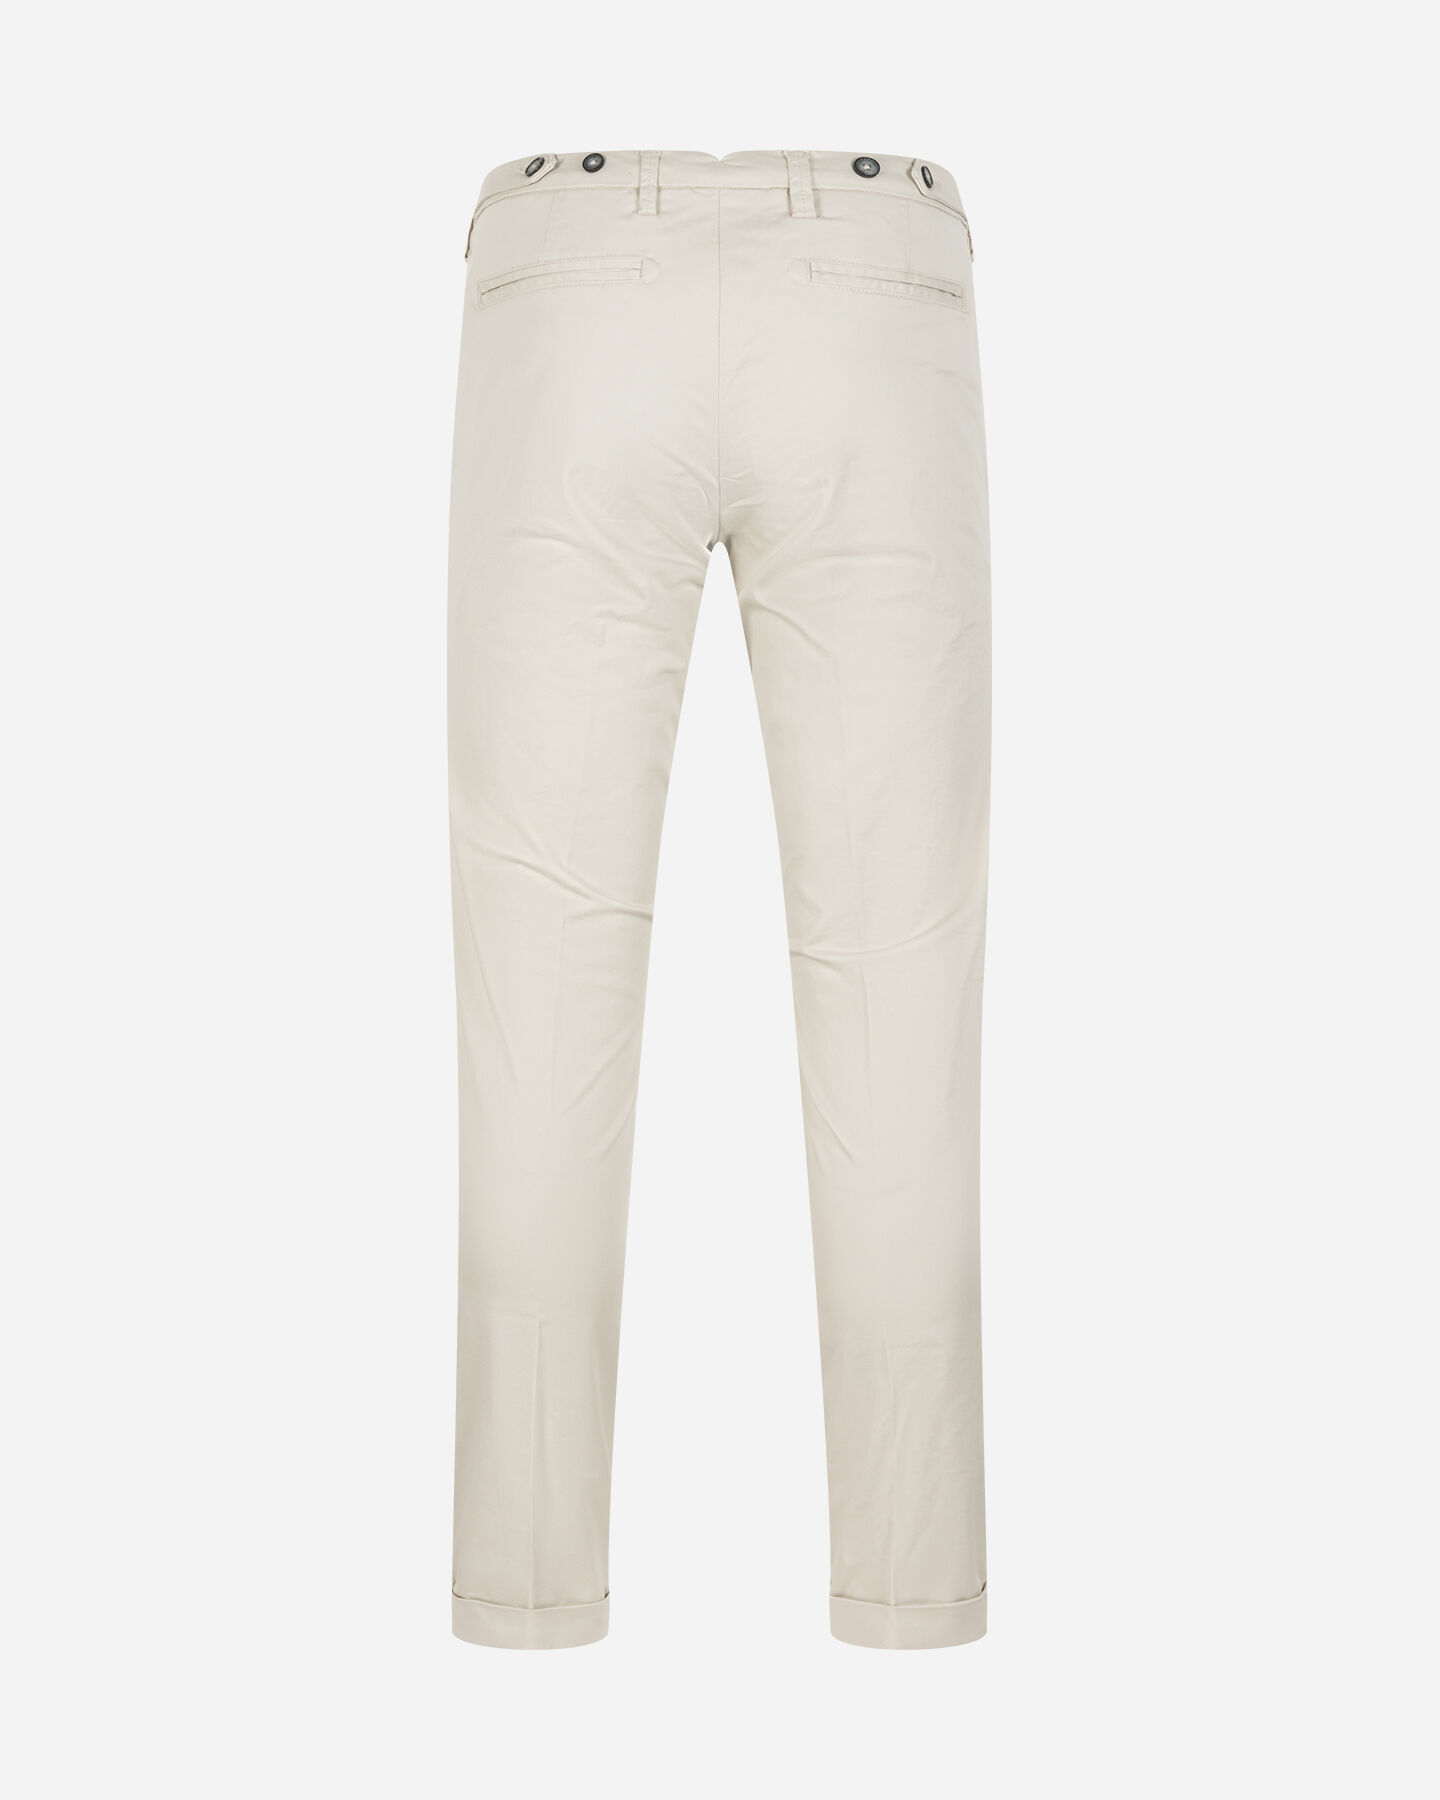  Pantalone BEST COMPANY MONTENAPOLEONE M S4131665|006|44 scatto 5